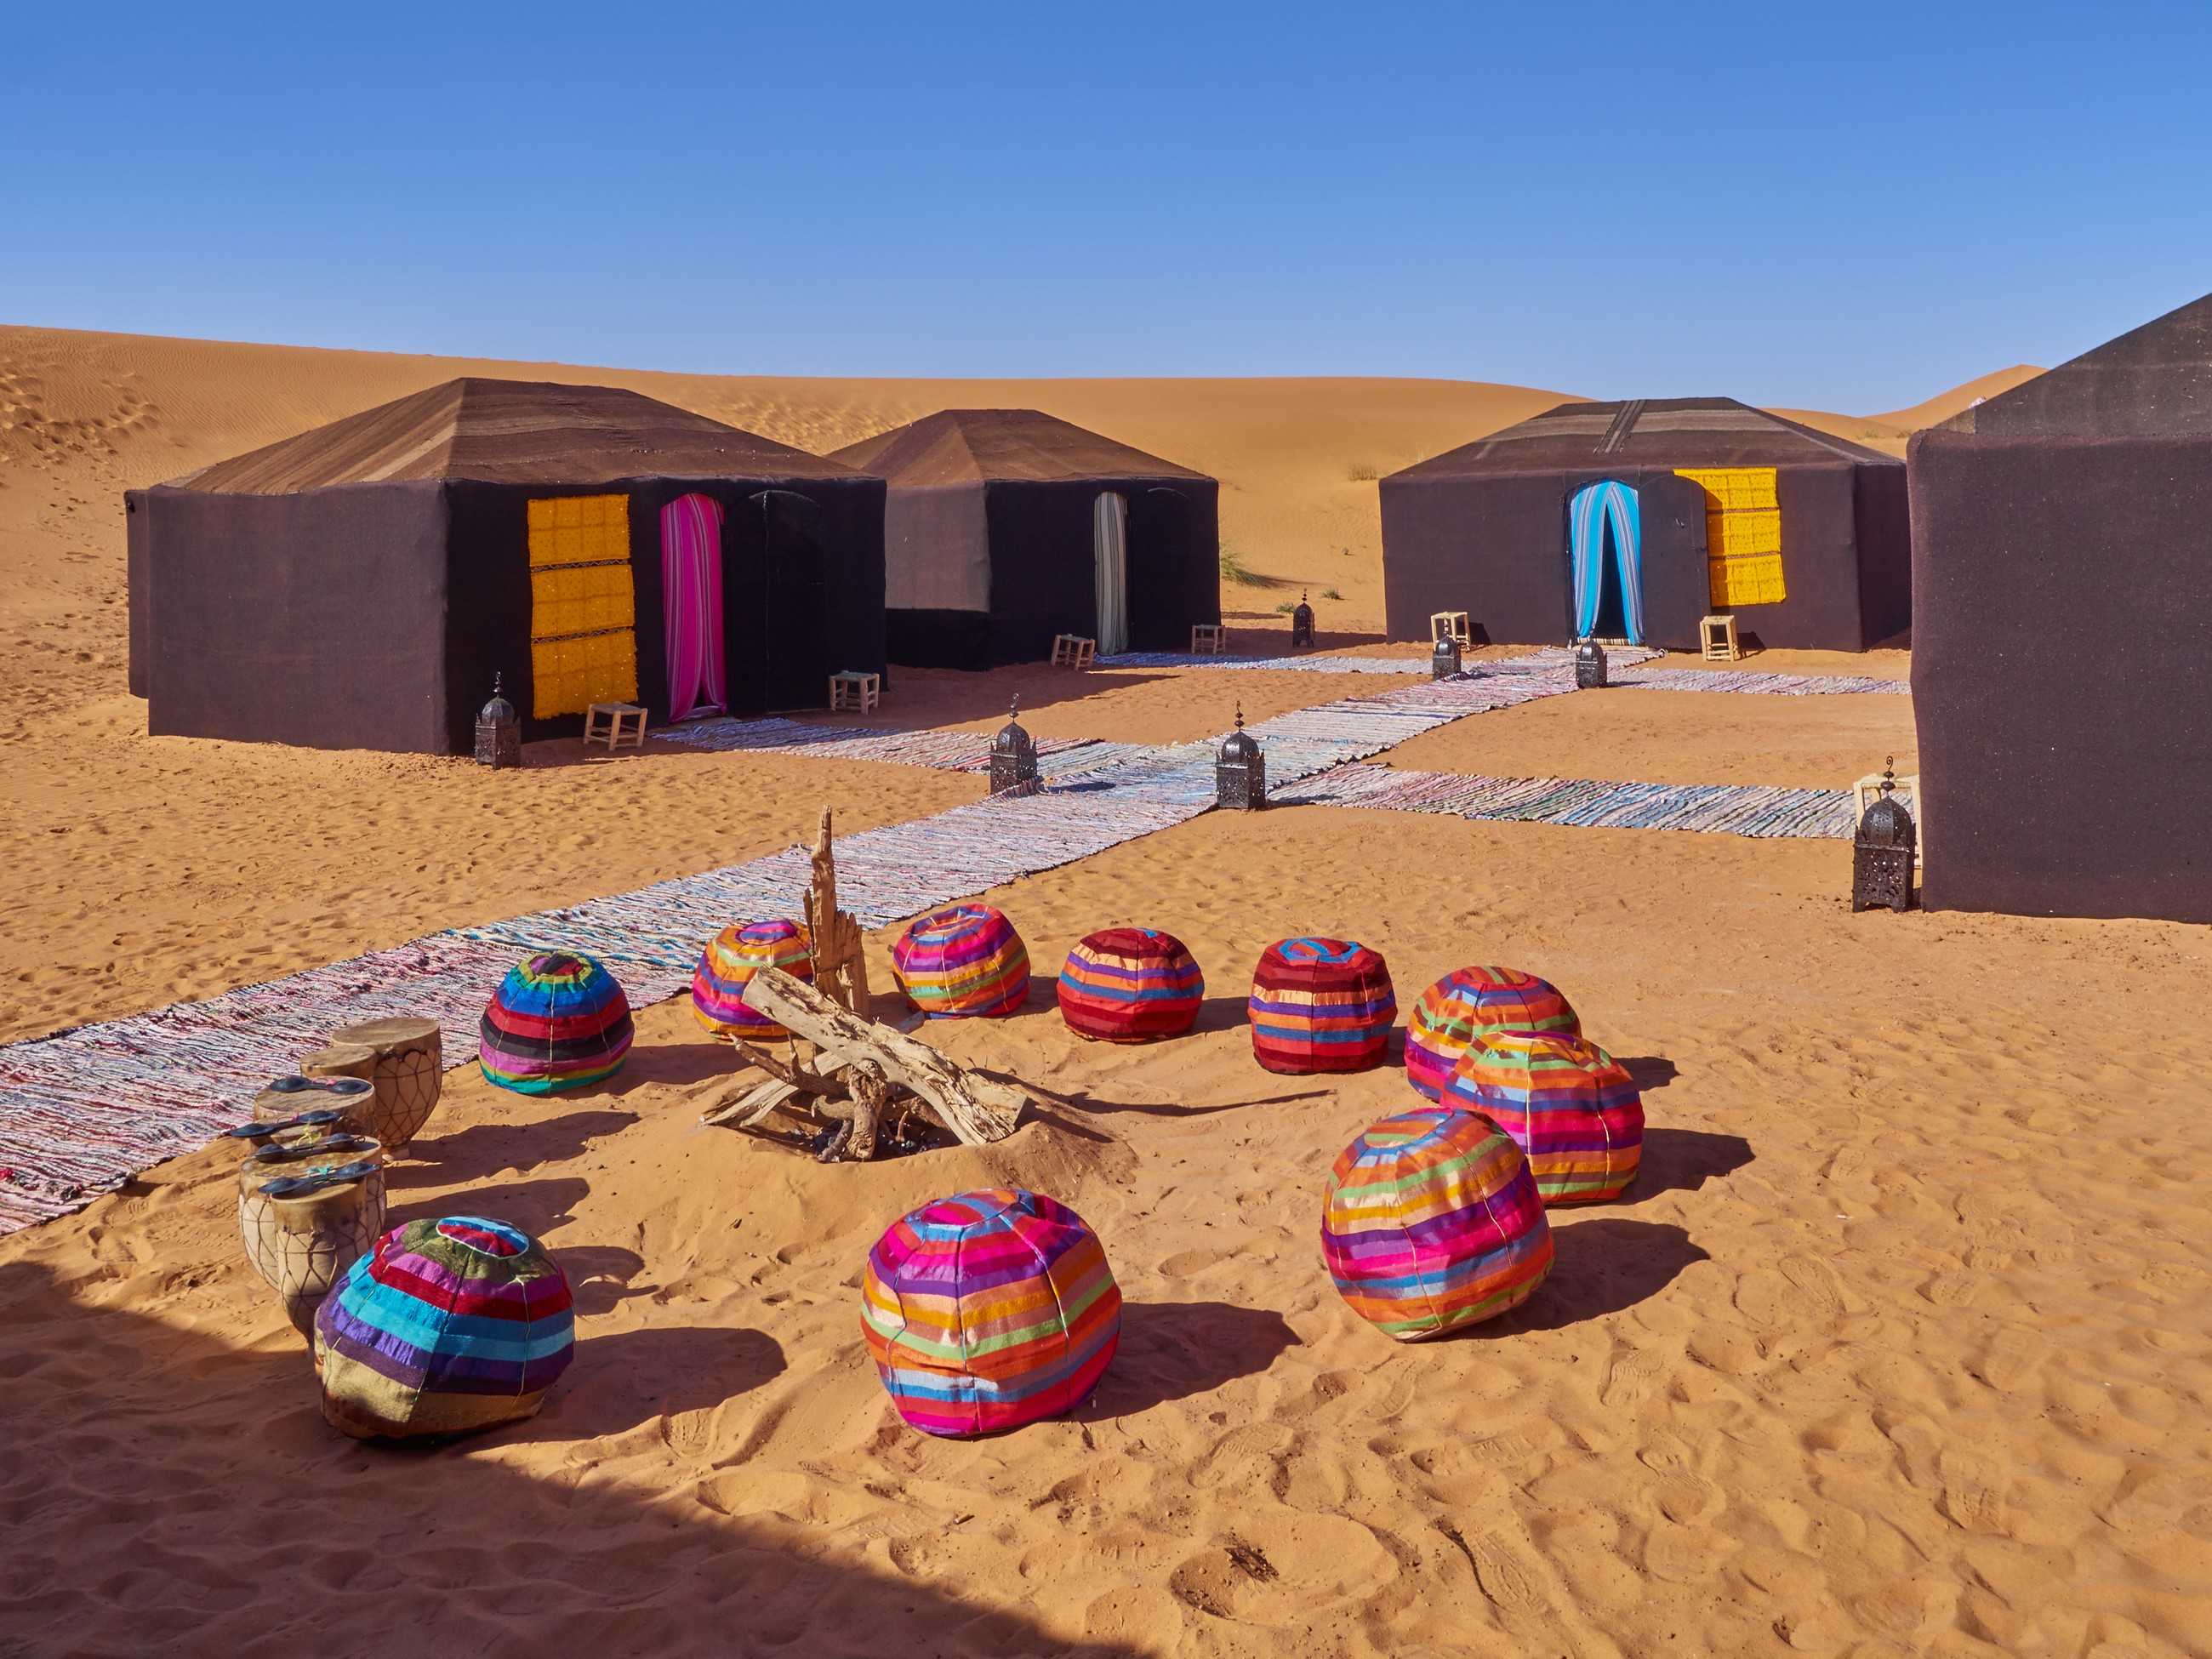 03 days Morocco New Year desert tour from Fez to Marrakech via Merzouga Sahara desert